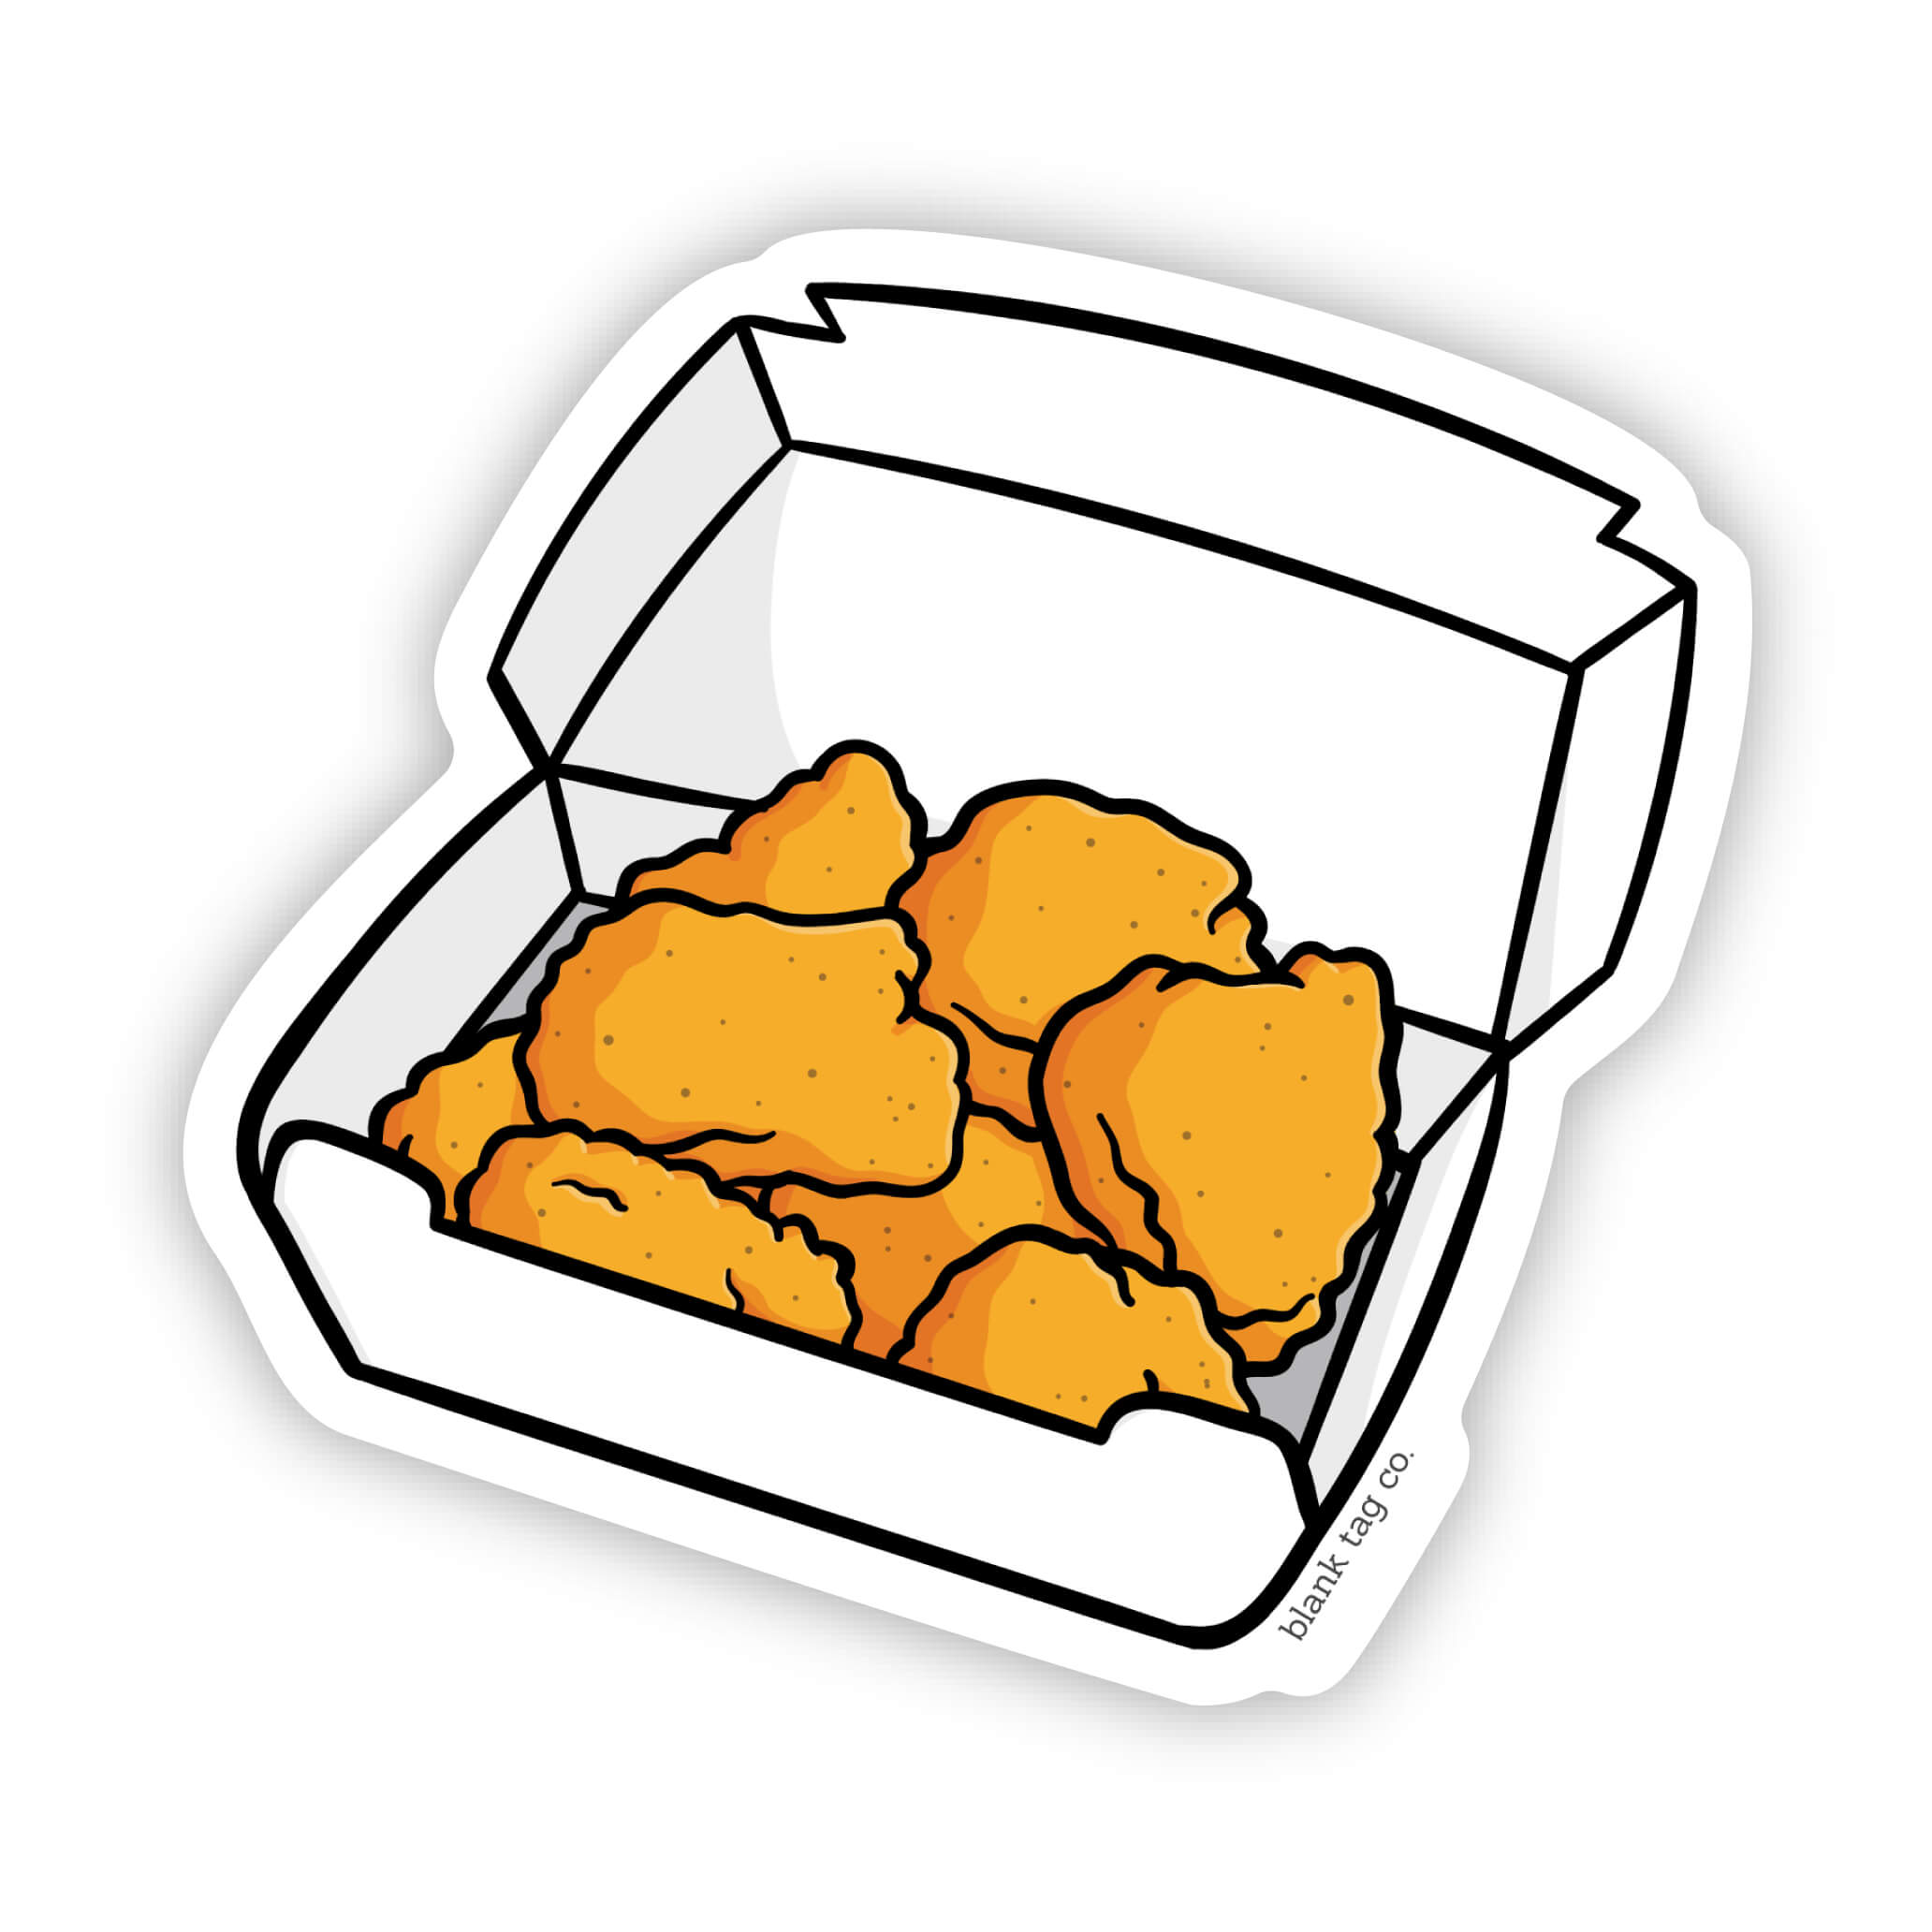 The Chicken Nuggets Sticker